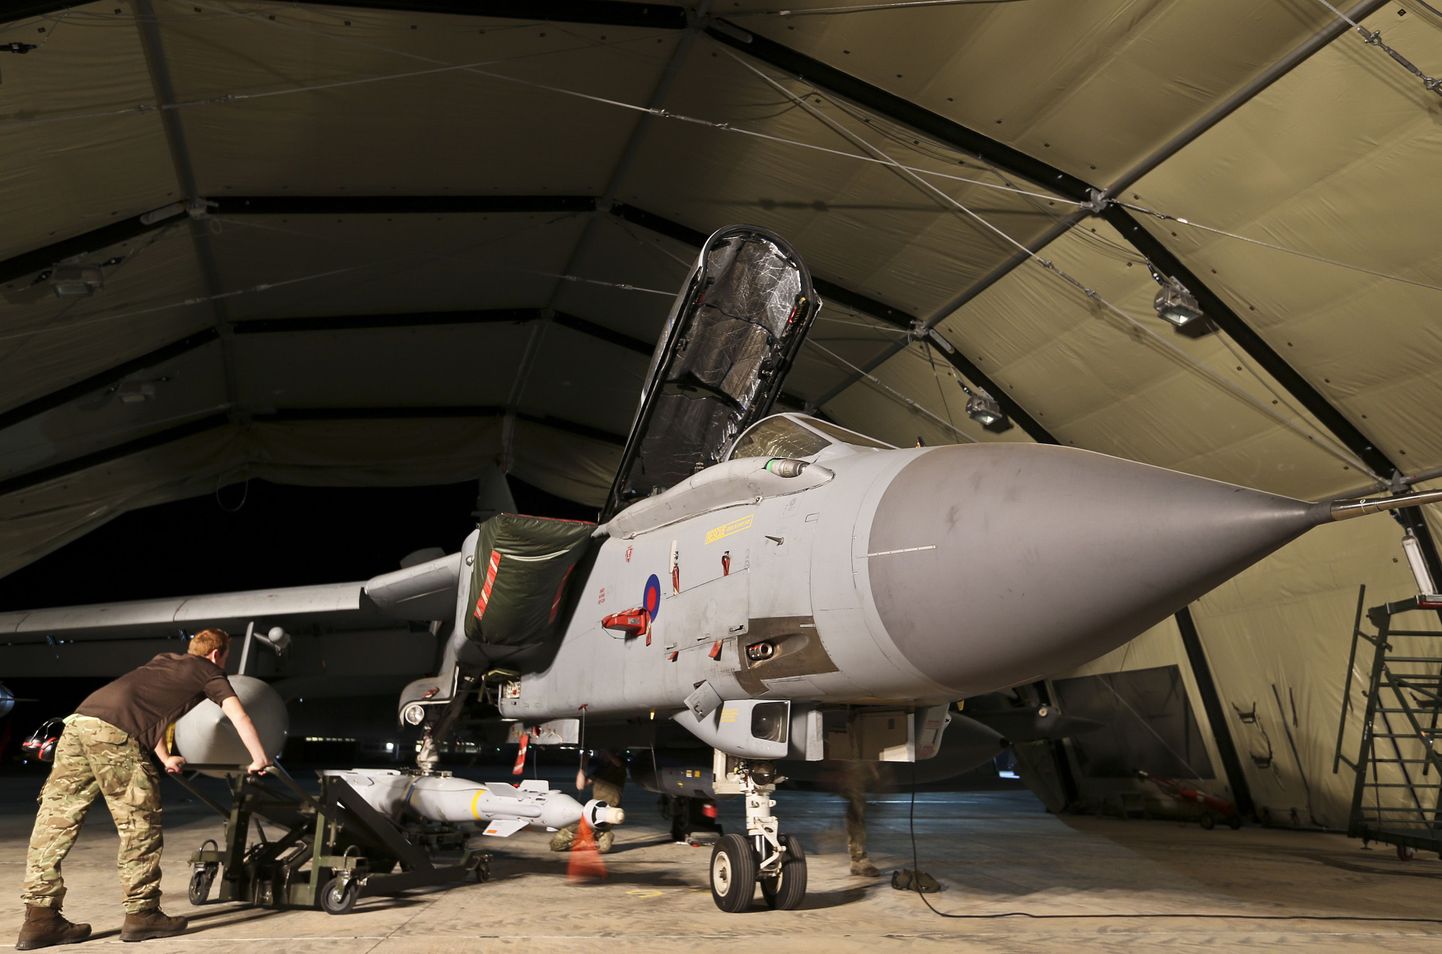 Briti kuninglike õhujõudude (RAF) liige koos Paveway IV laserjuhitava pommiga hävituslennuki Tornado GR4 juures.